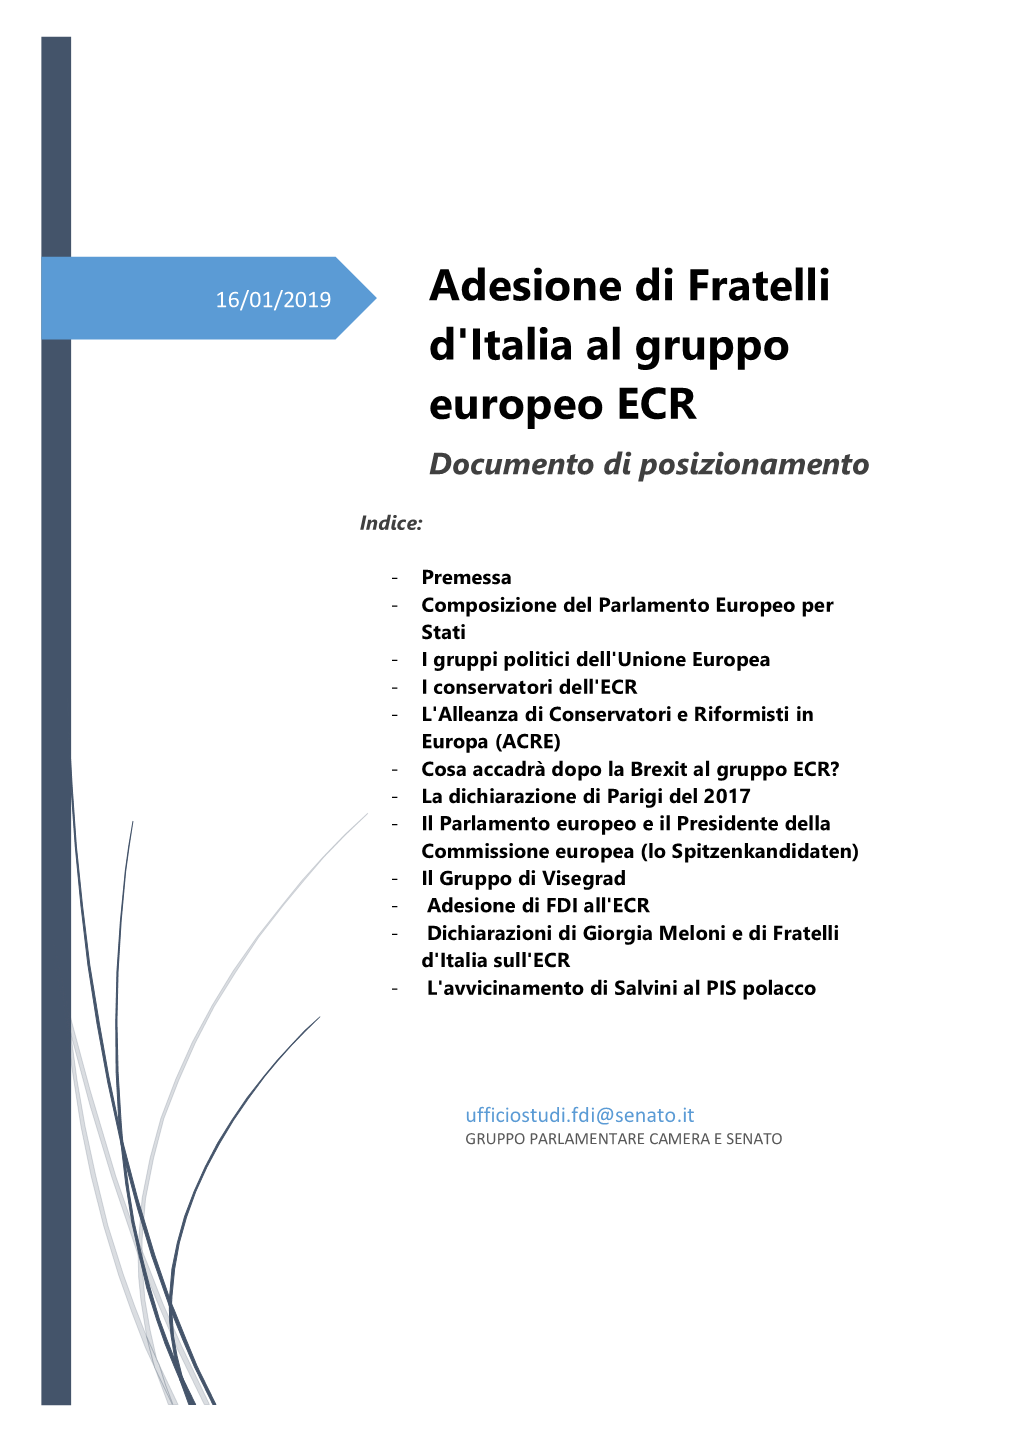 Adesione Di Fratelli D'italia Al Gruppo Europeo ECR Documento Di Posizionamento